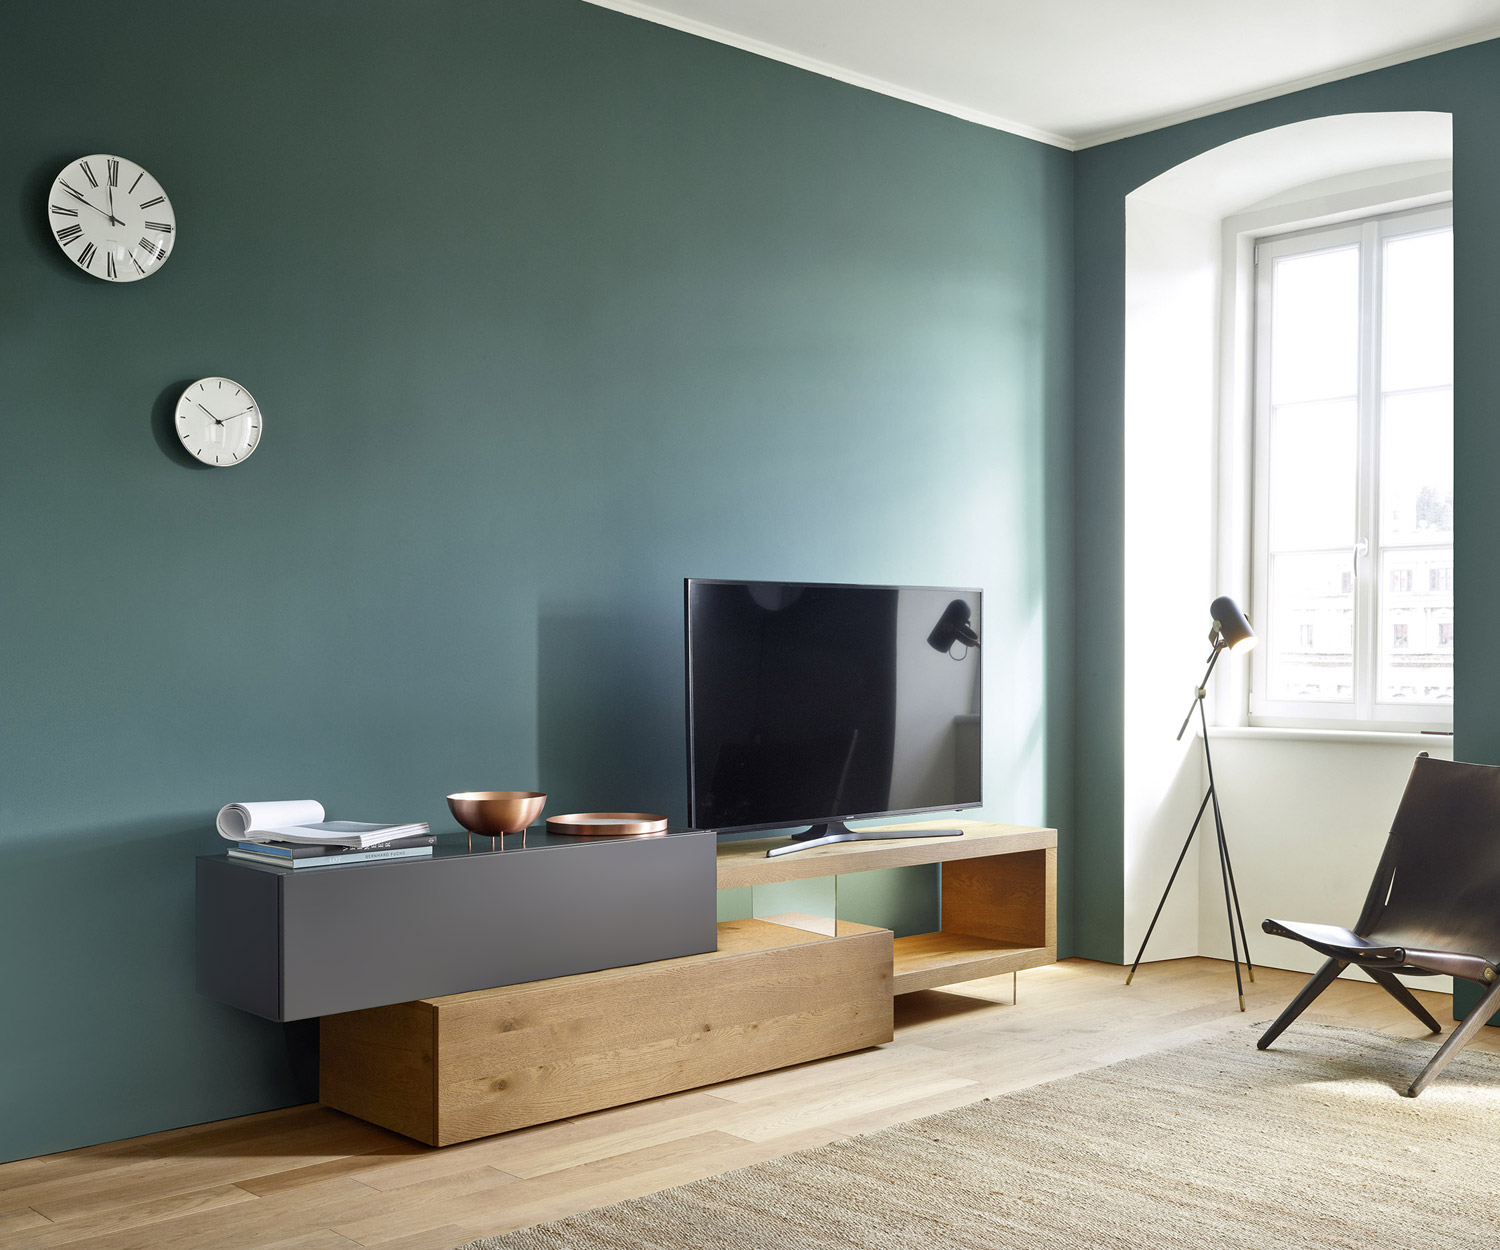 Exklusive Design TV Wohnwand Livitalia C32 in Grau Matt Design Lowboard für TV Fernseher offenes Fach